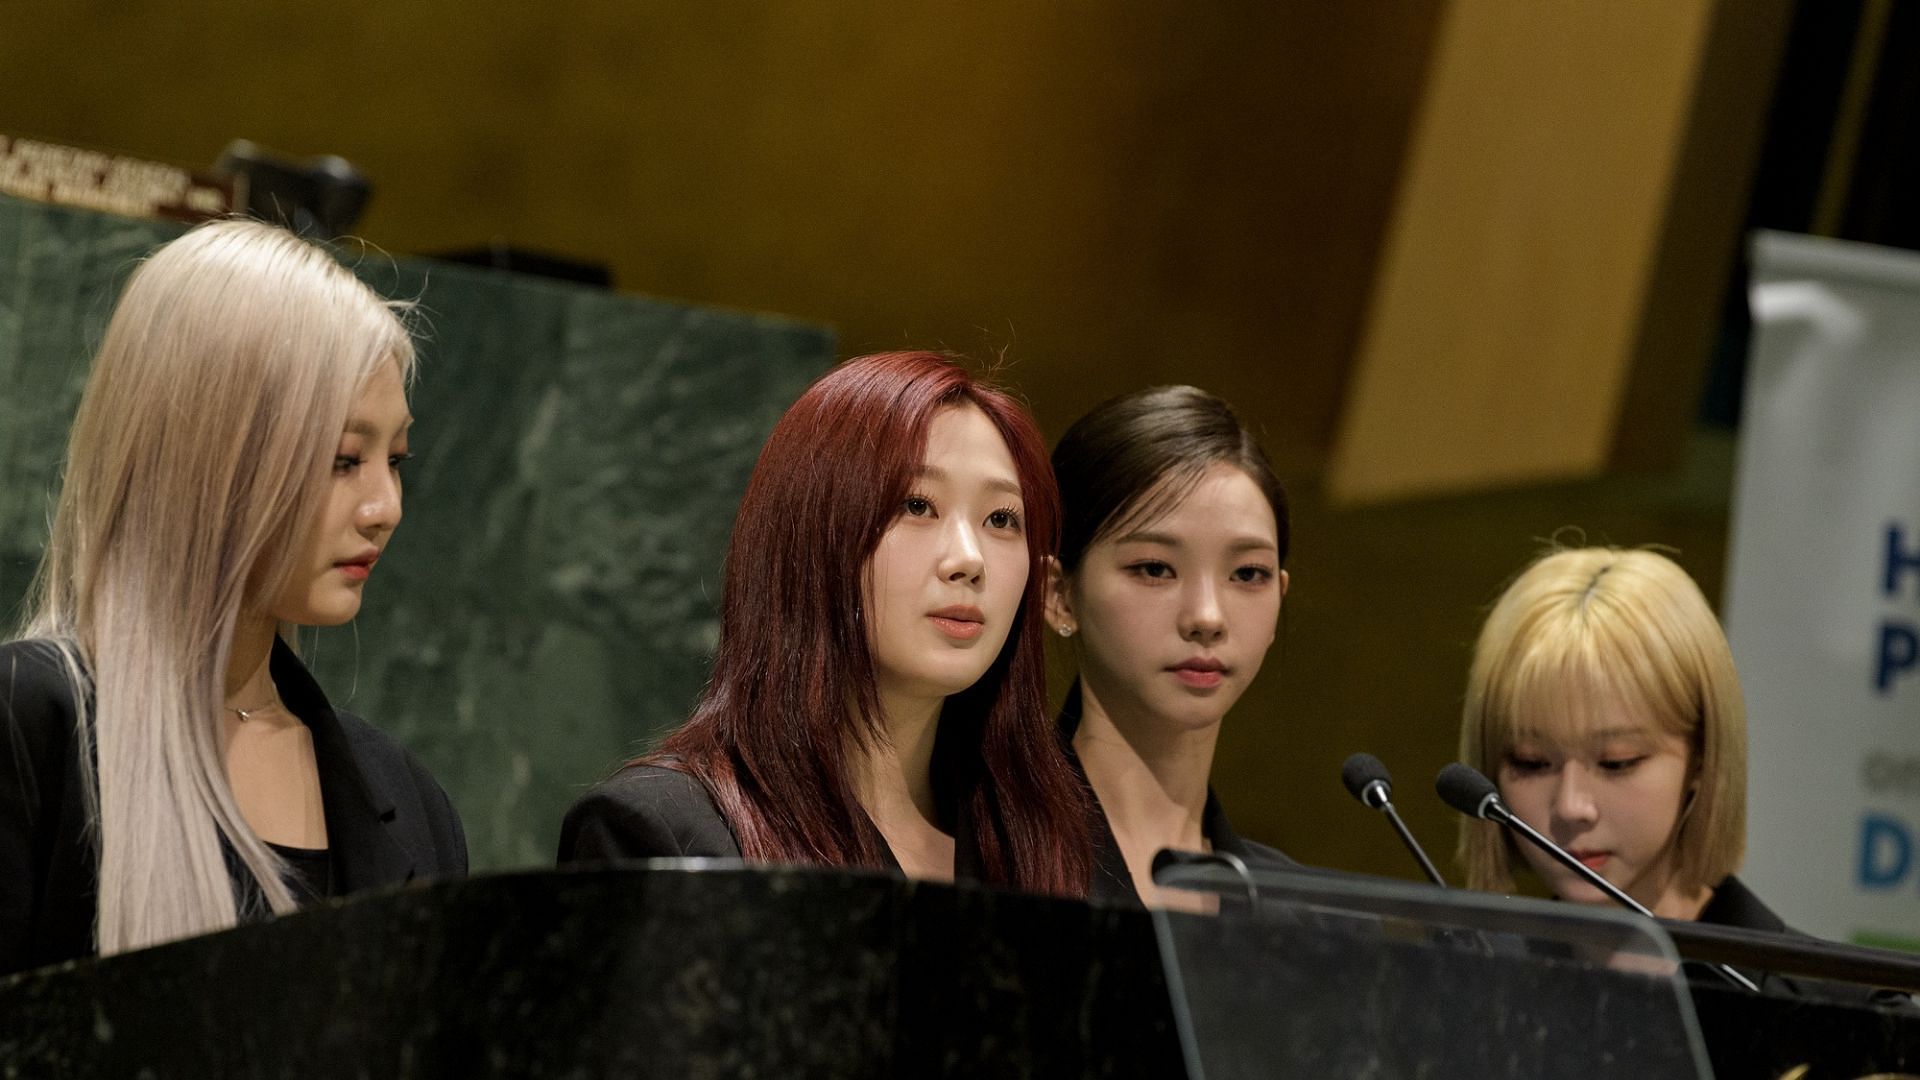 A still of the K-pop girl group (Image via @UN/Twitter)